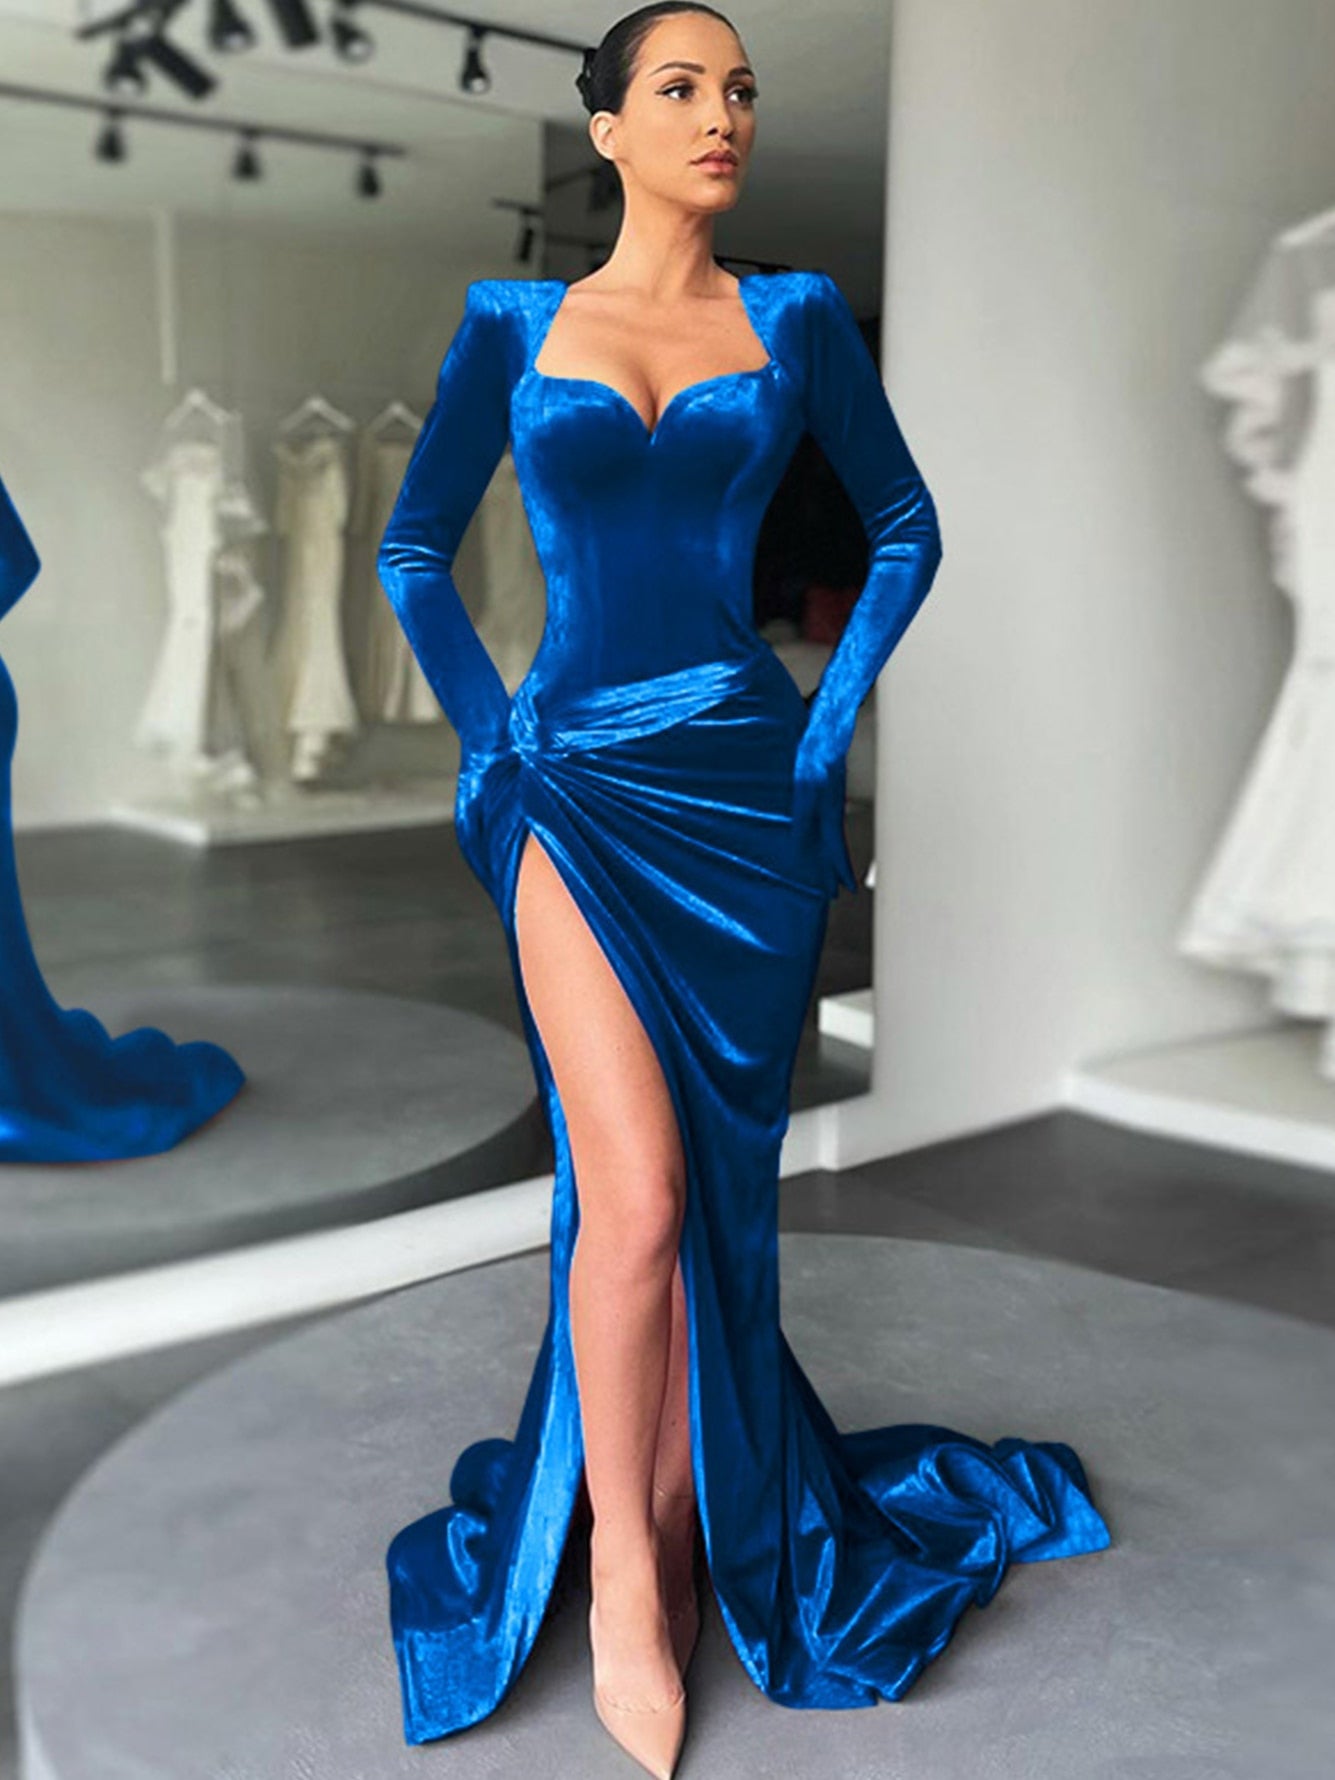 VELVET DRESS BLOODLE$$ - Blue Club Dress / S